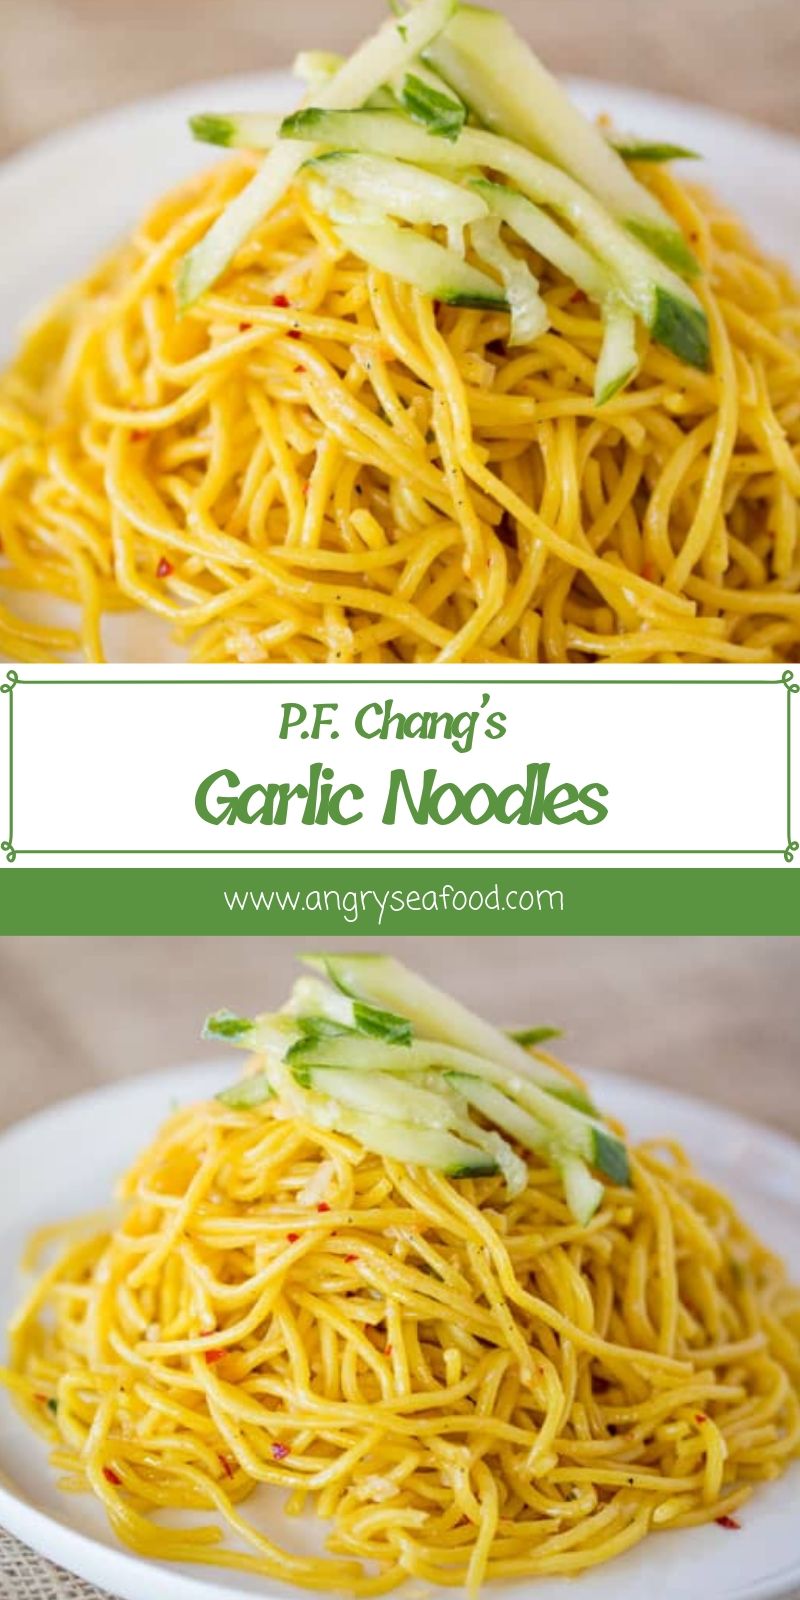 P.F. Chang’s Garlic Noodles